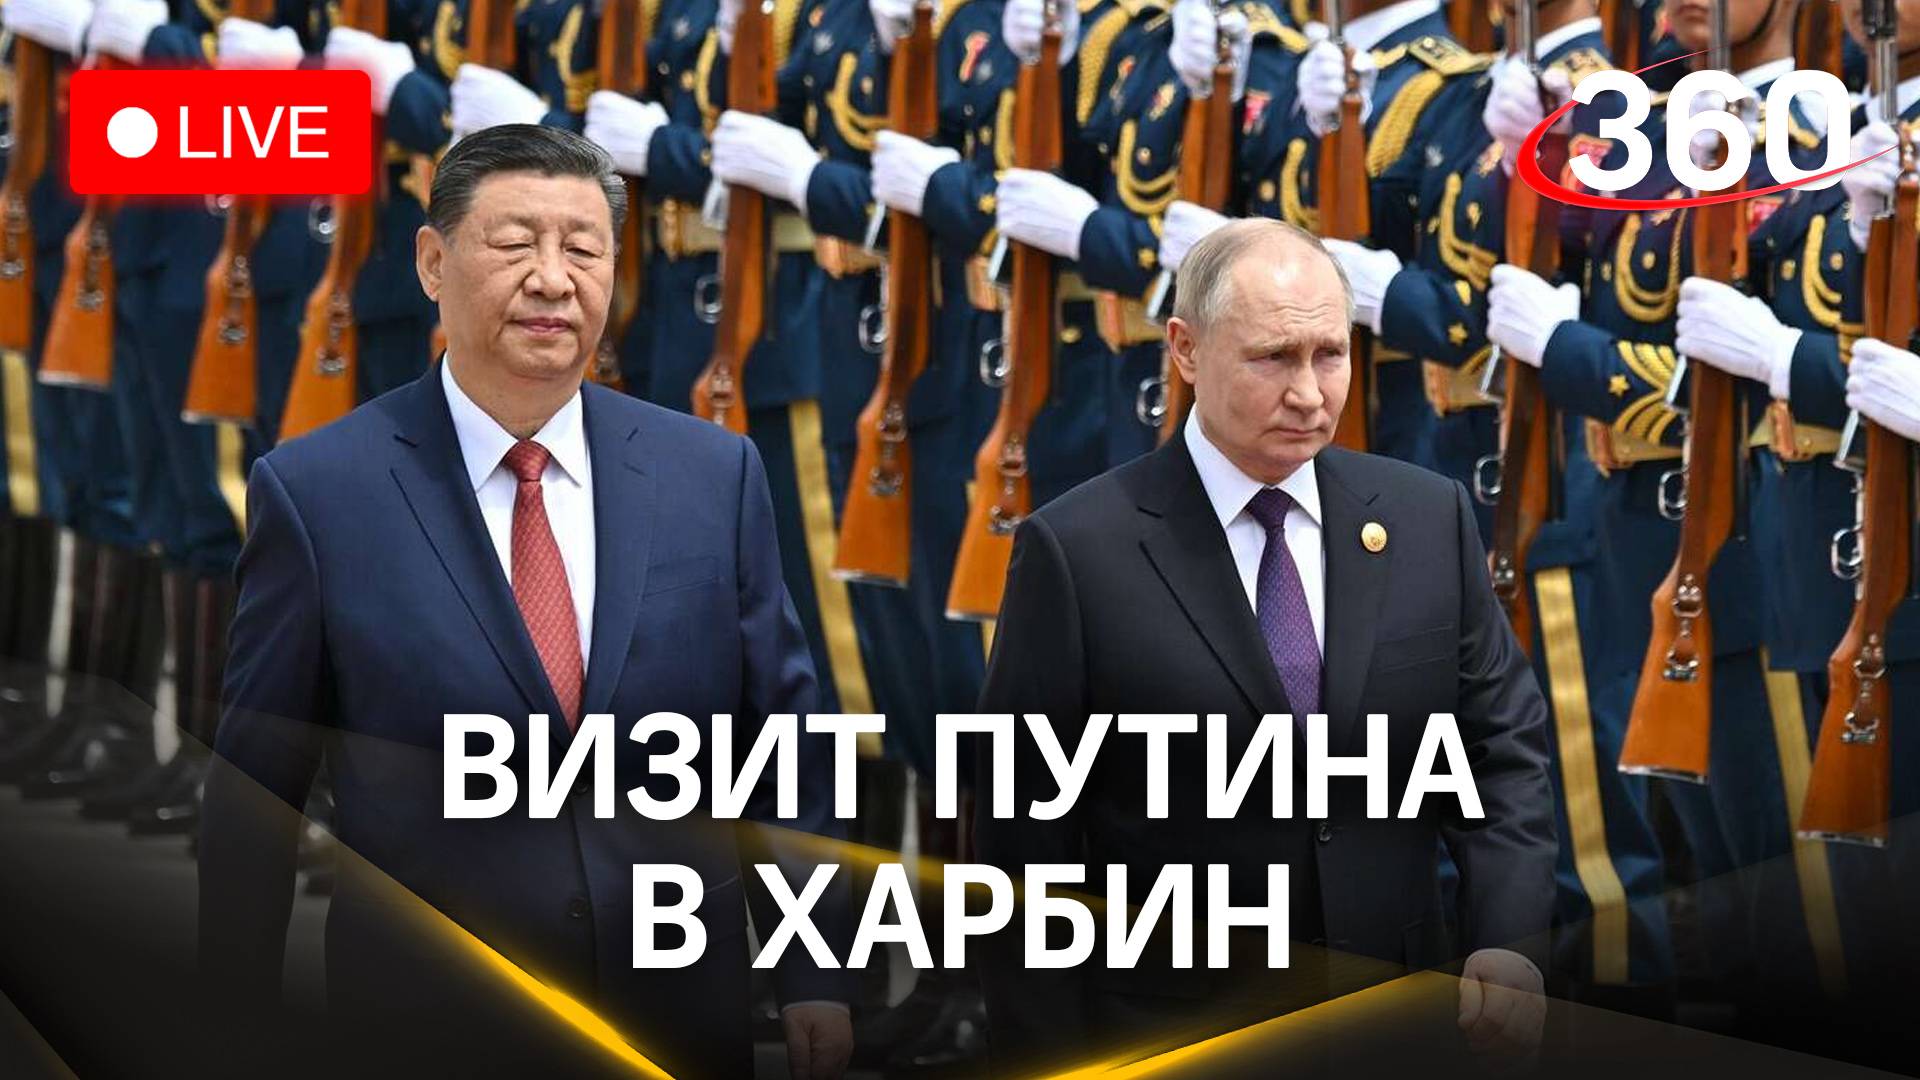 Путин с официальным визитом в Китайскую Народную Республику. Прямая трансляция